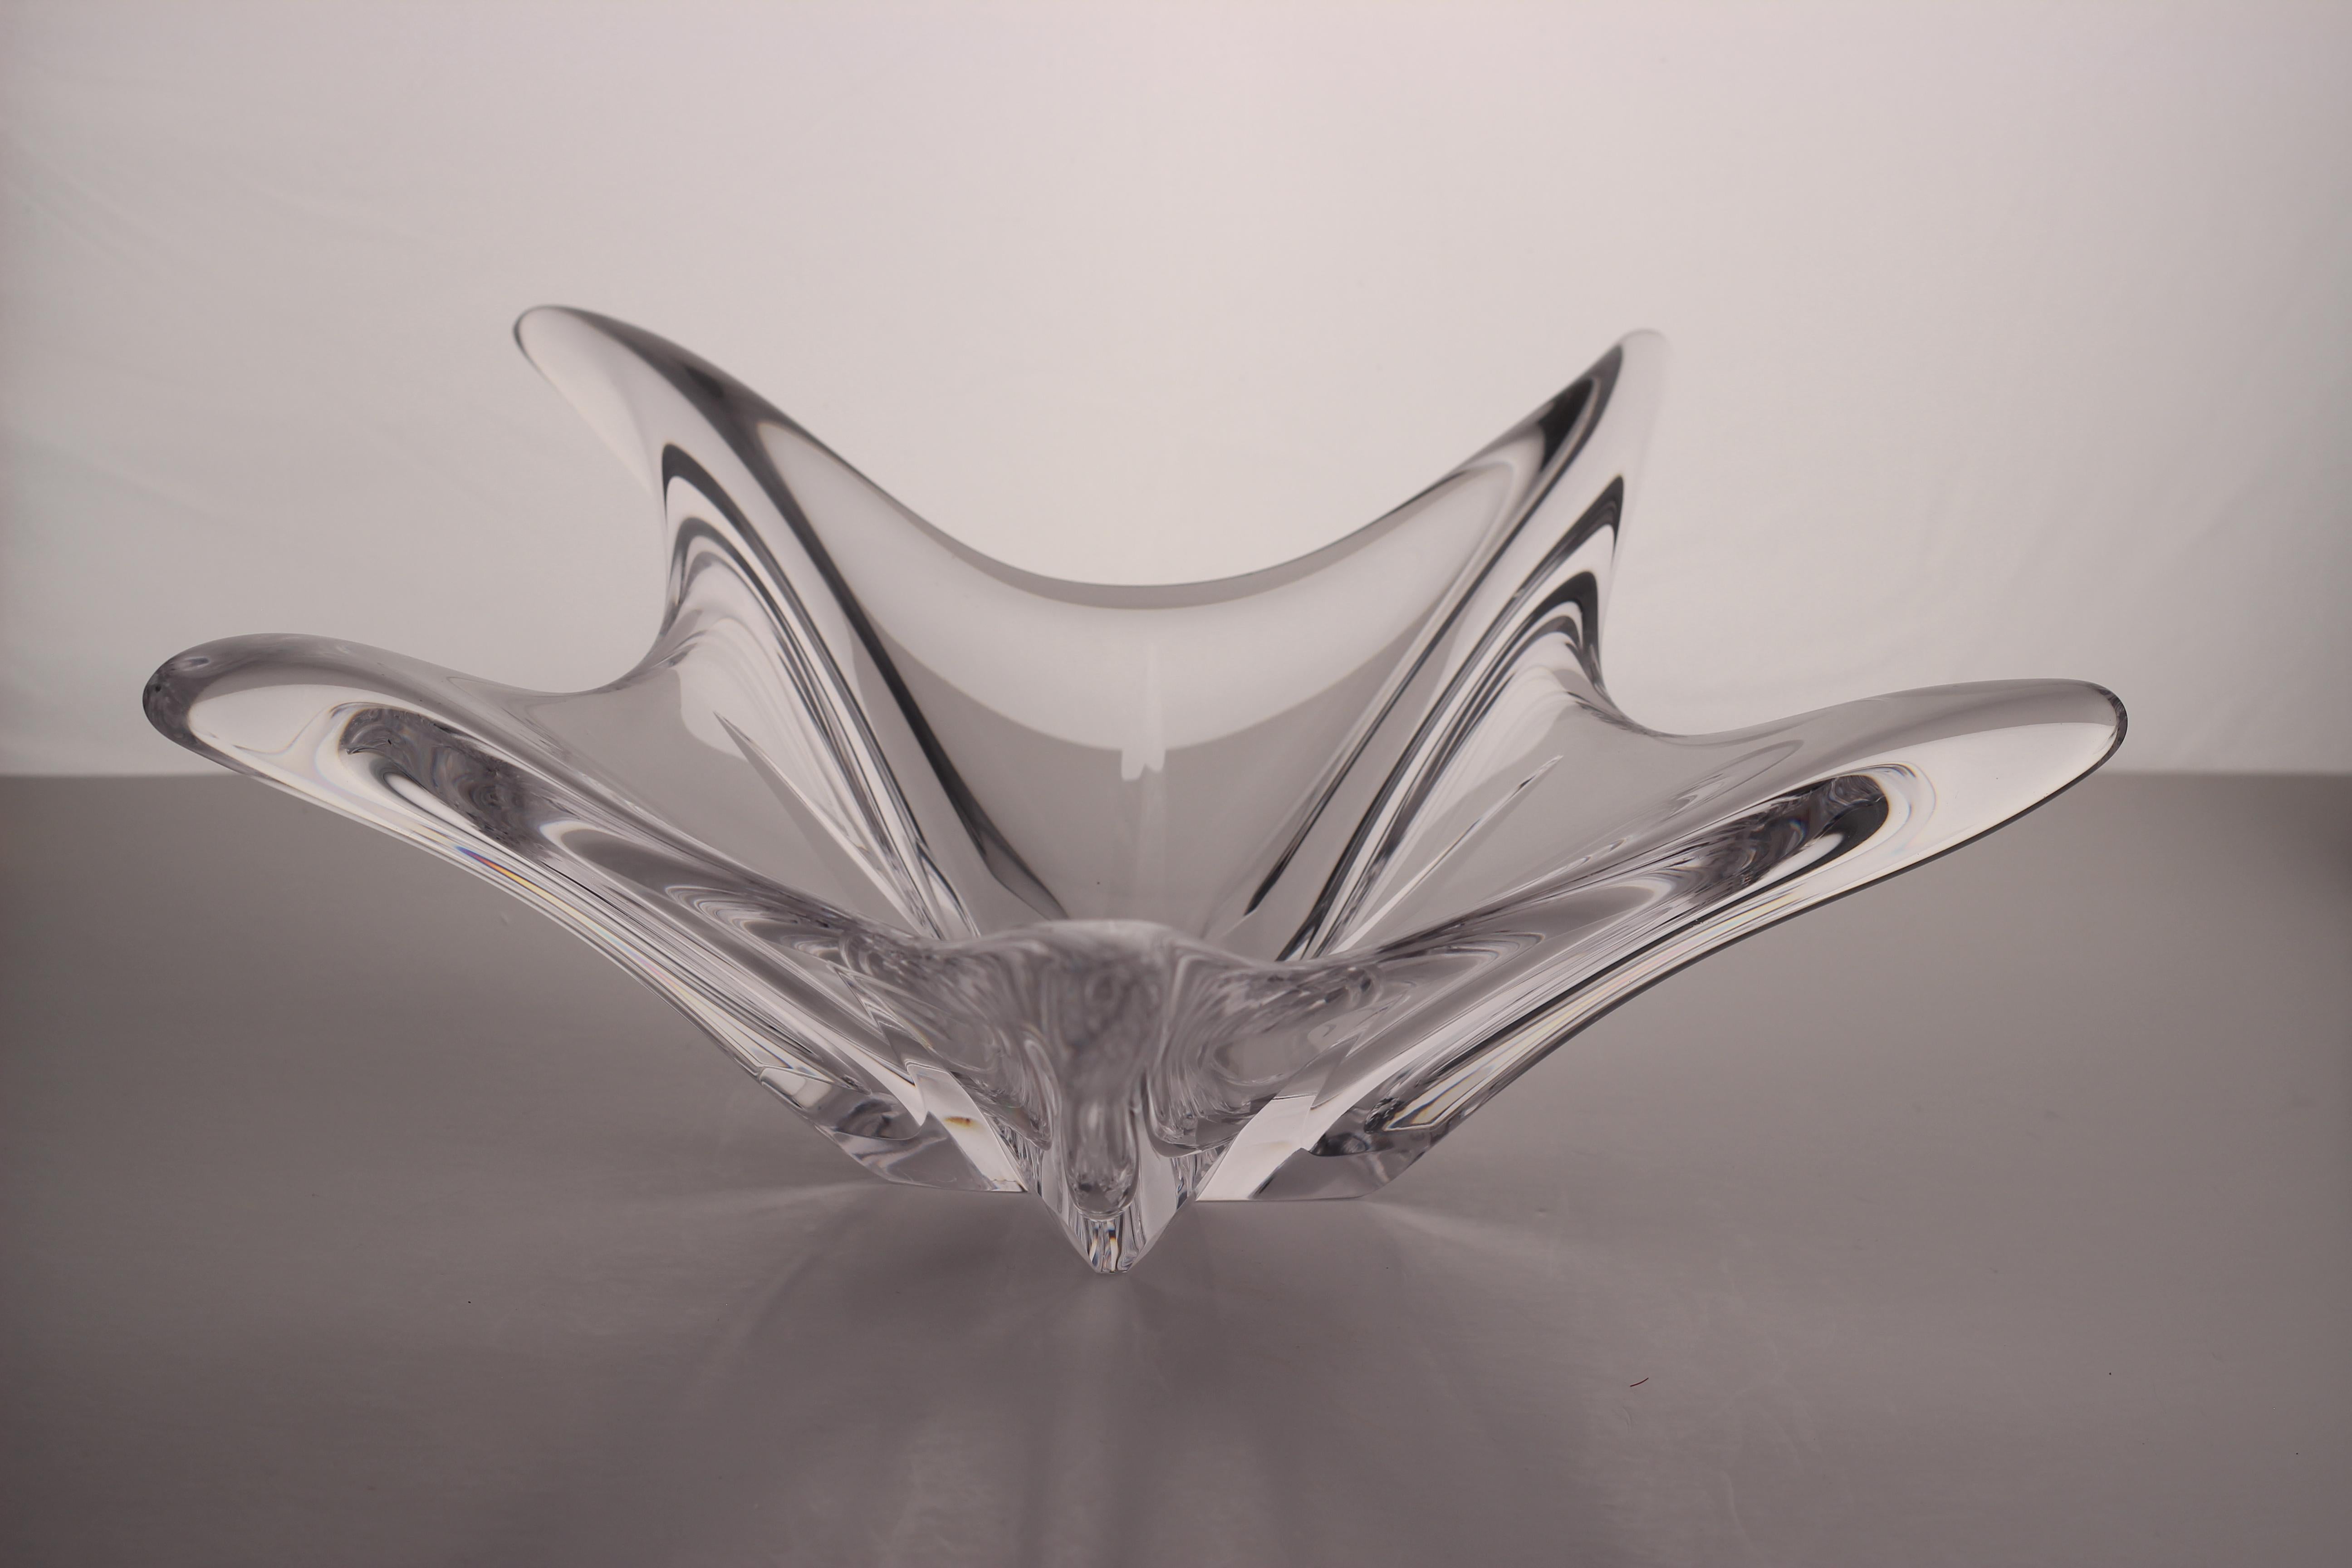 Diese raffinierte und skulpturale Schale aus durchscheinendem Glas wurde um 1950 von Daum, einem der berühmtesten Glashersteller dieser Zeit in Nancy, Frankreich, hergestellt. Daum wurde auf der Weltausstellung 1900 mit einem Grand Prix für seine